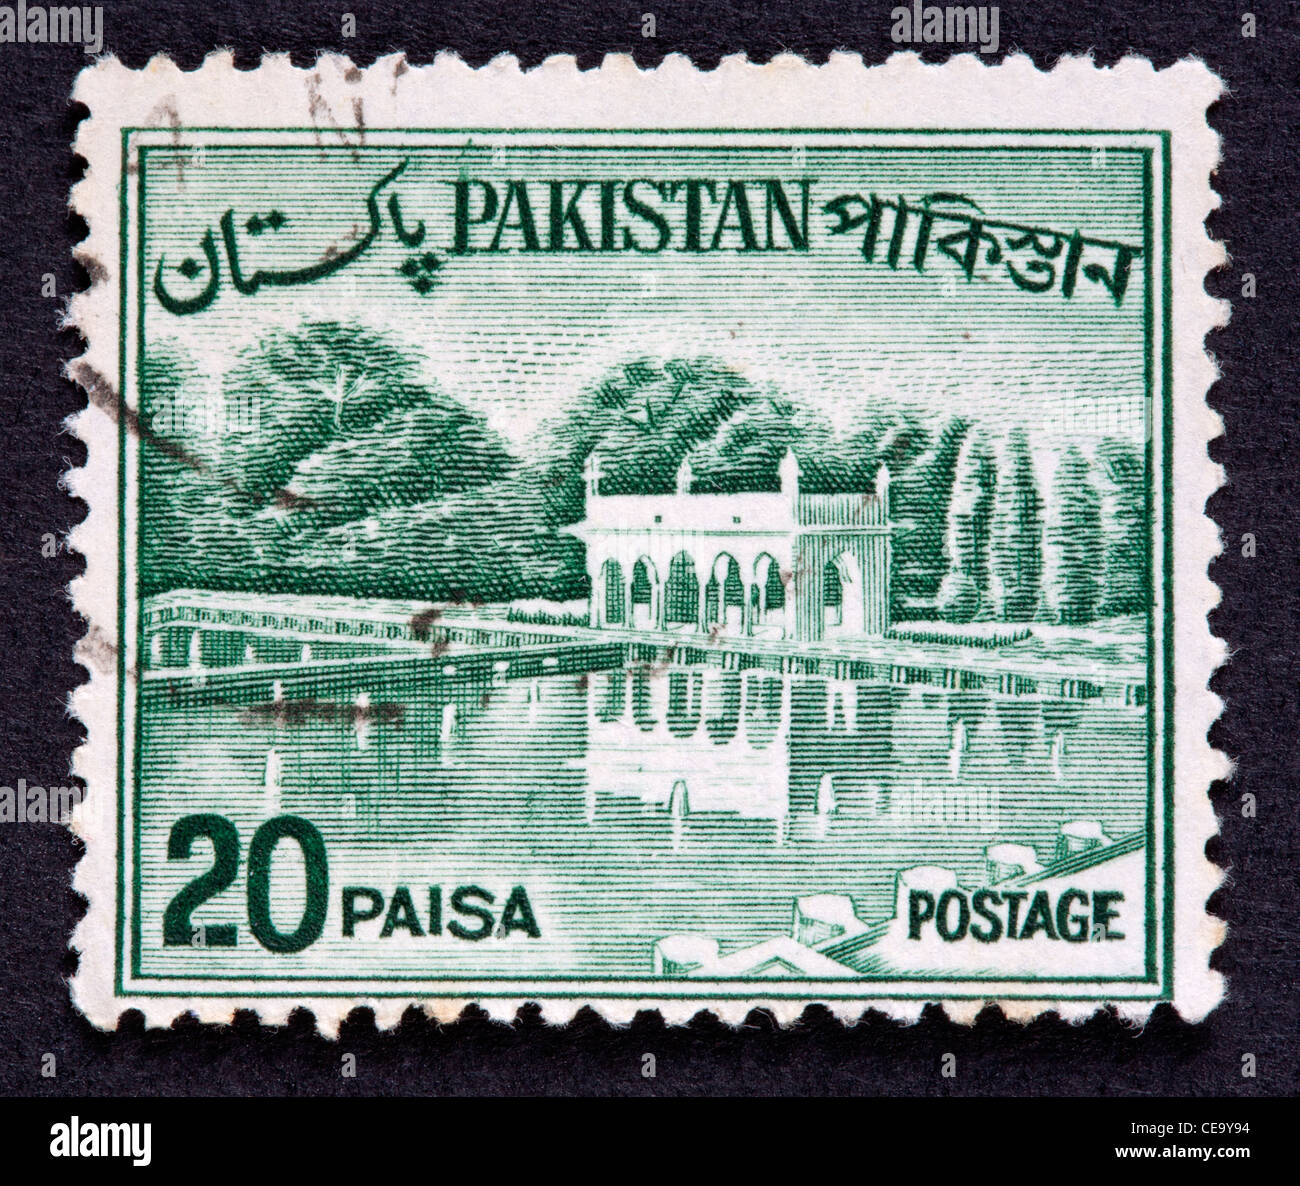 Timbre-poste pakistanais Banque D'Images